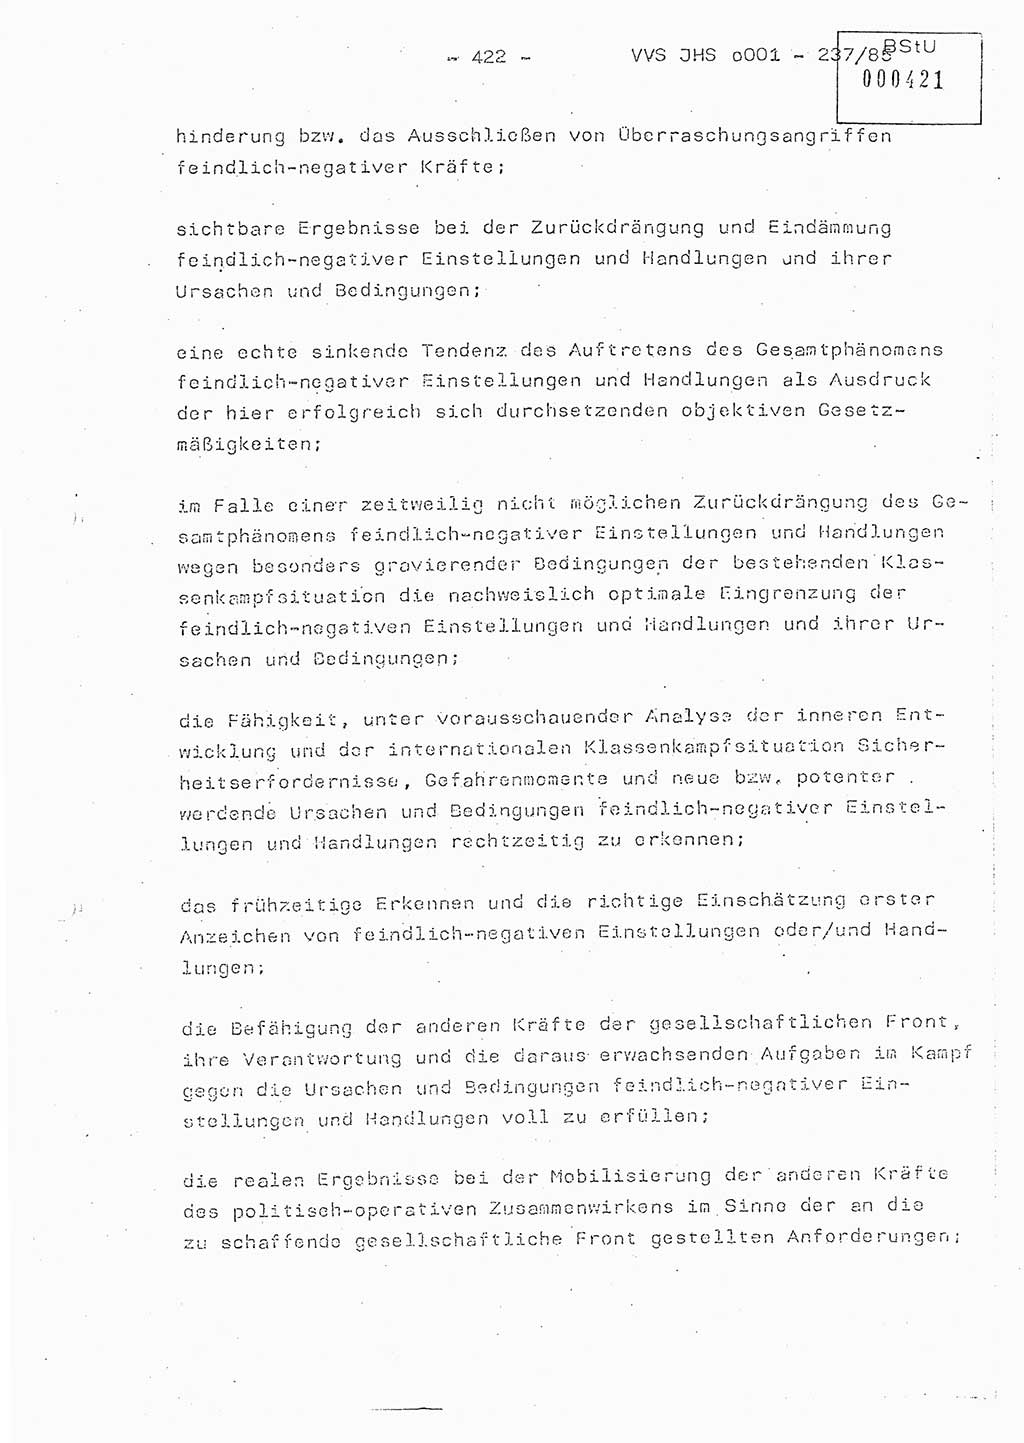 Dissertation Oberstleutnant Peter Jakulski (JHS), Oberstleutnat Christian Rudolph (HA Ⅸ), Major Horst Böttger (ZMD), Major Wolfgang Grüneberg (JHS), Major Albert Meutsch (JHS), Ministerium für Staatssicherheit (MfS) [Deutsche Demokratische Republik (DDR)], Juristische Hochschule (JHS), Vertrauliche Verschlußsache (VVS) o001-237/85, Potsdam 1985, Seite 422 (Diss. MfS DDR JHS VVS o001-237/85 1985, S. 422)